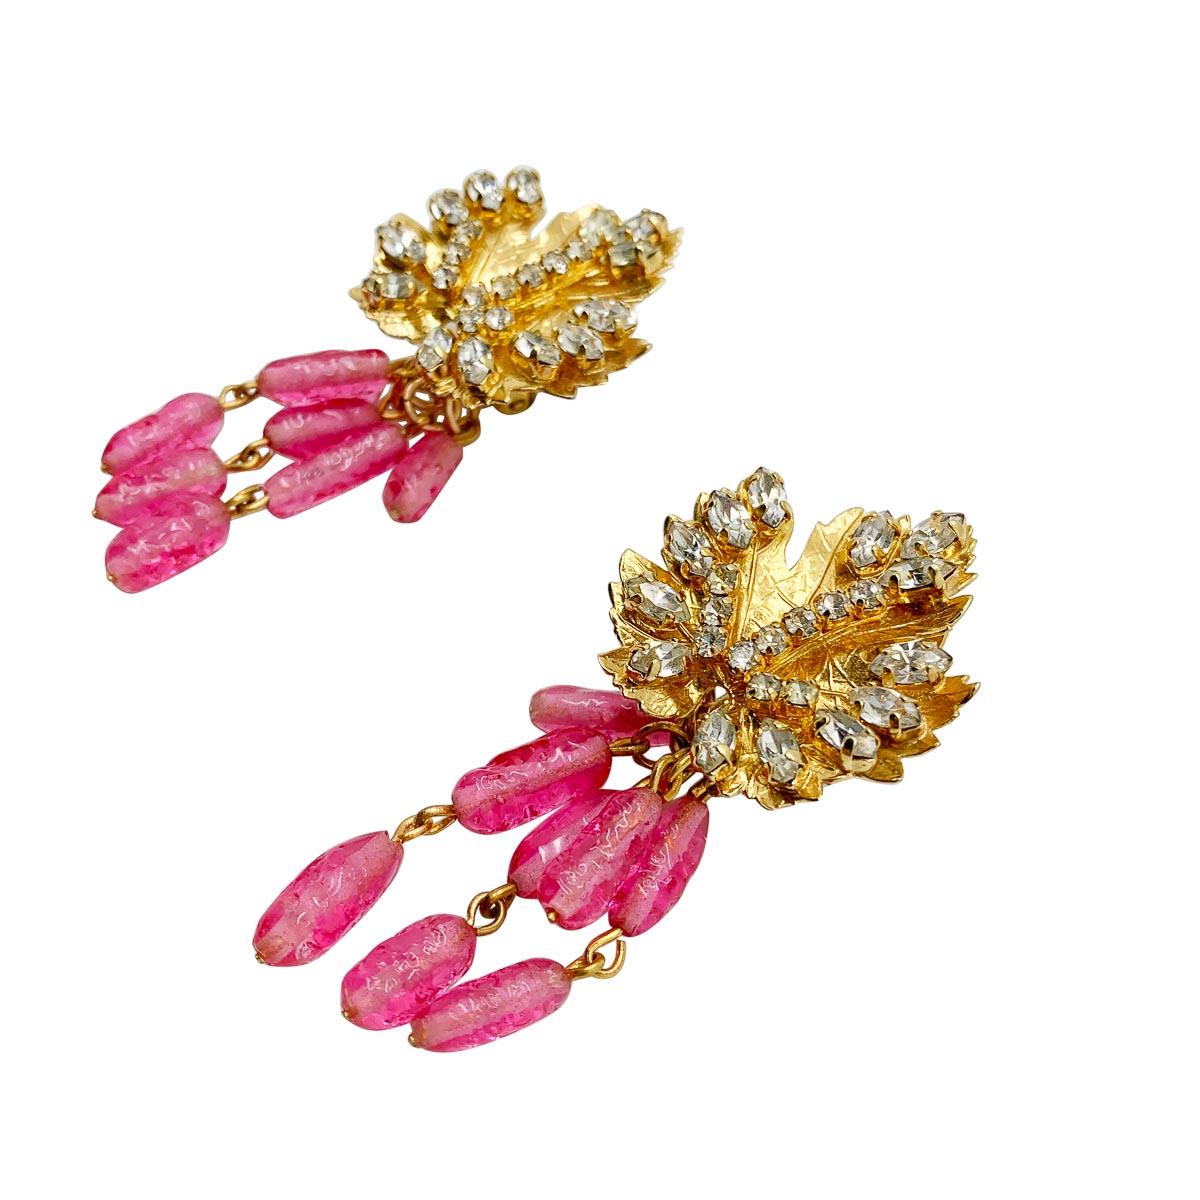 Ein außergewöhnliches Paar Vintage-Ohrringe von Dior aus den 1970er Jahren. Das Blattmotiv auf der Spitze ist mit weißen Chaton-Kristallen besetzt, die von rosafarbenen Kunstglasperlen abgelöst werden, die für einen edlen Look sorgen.
Mit